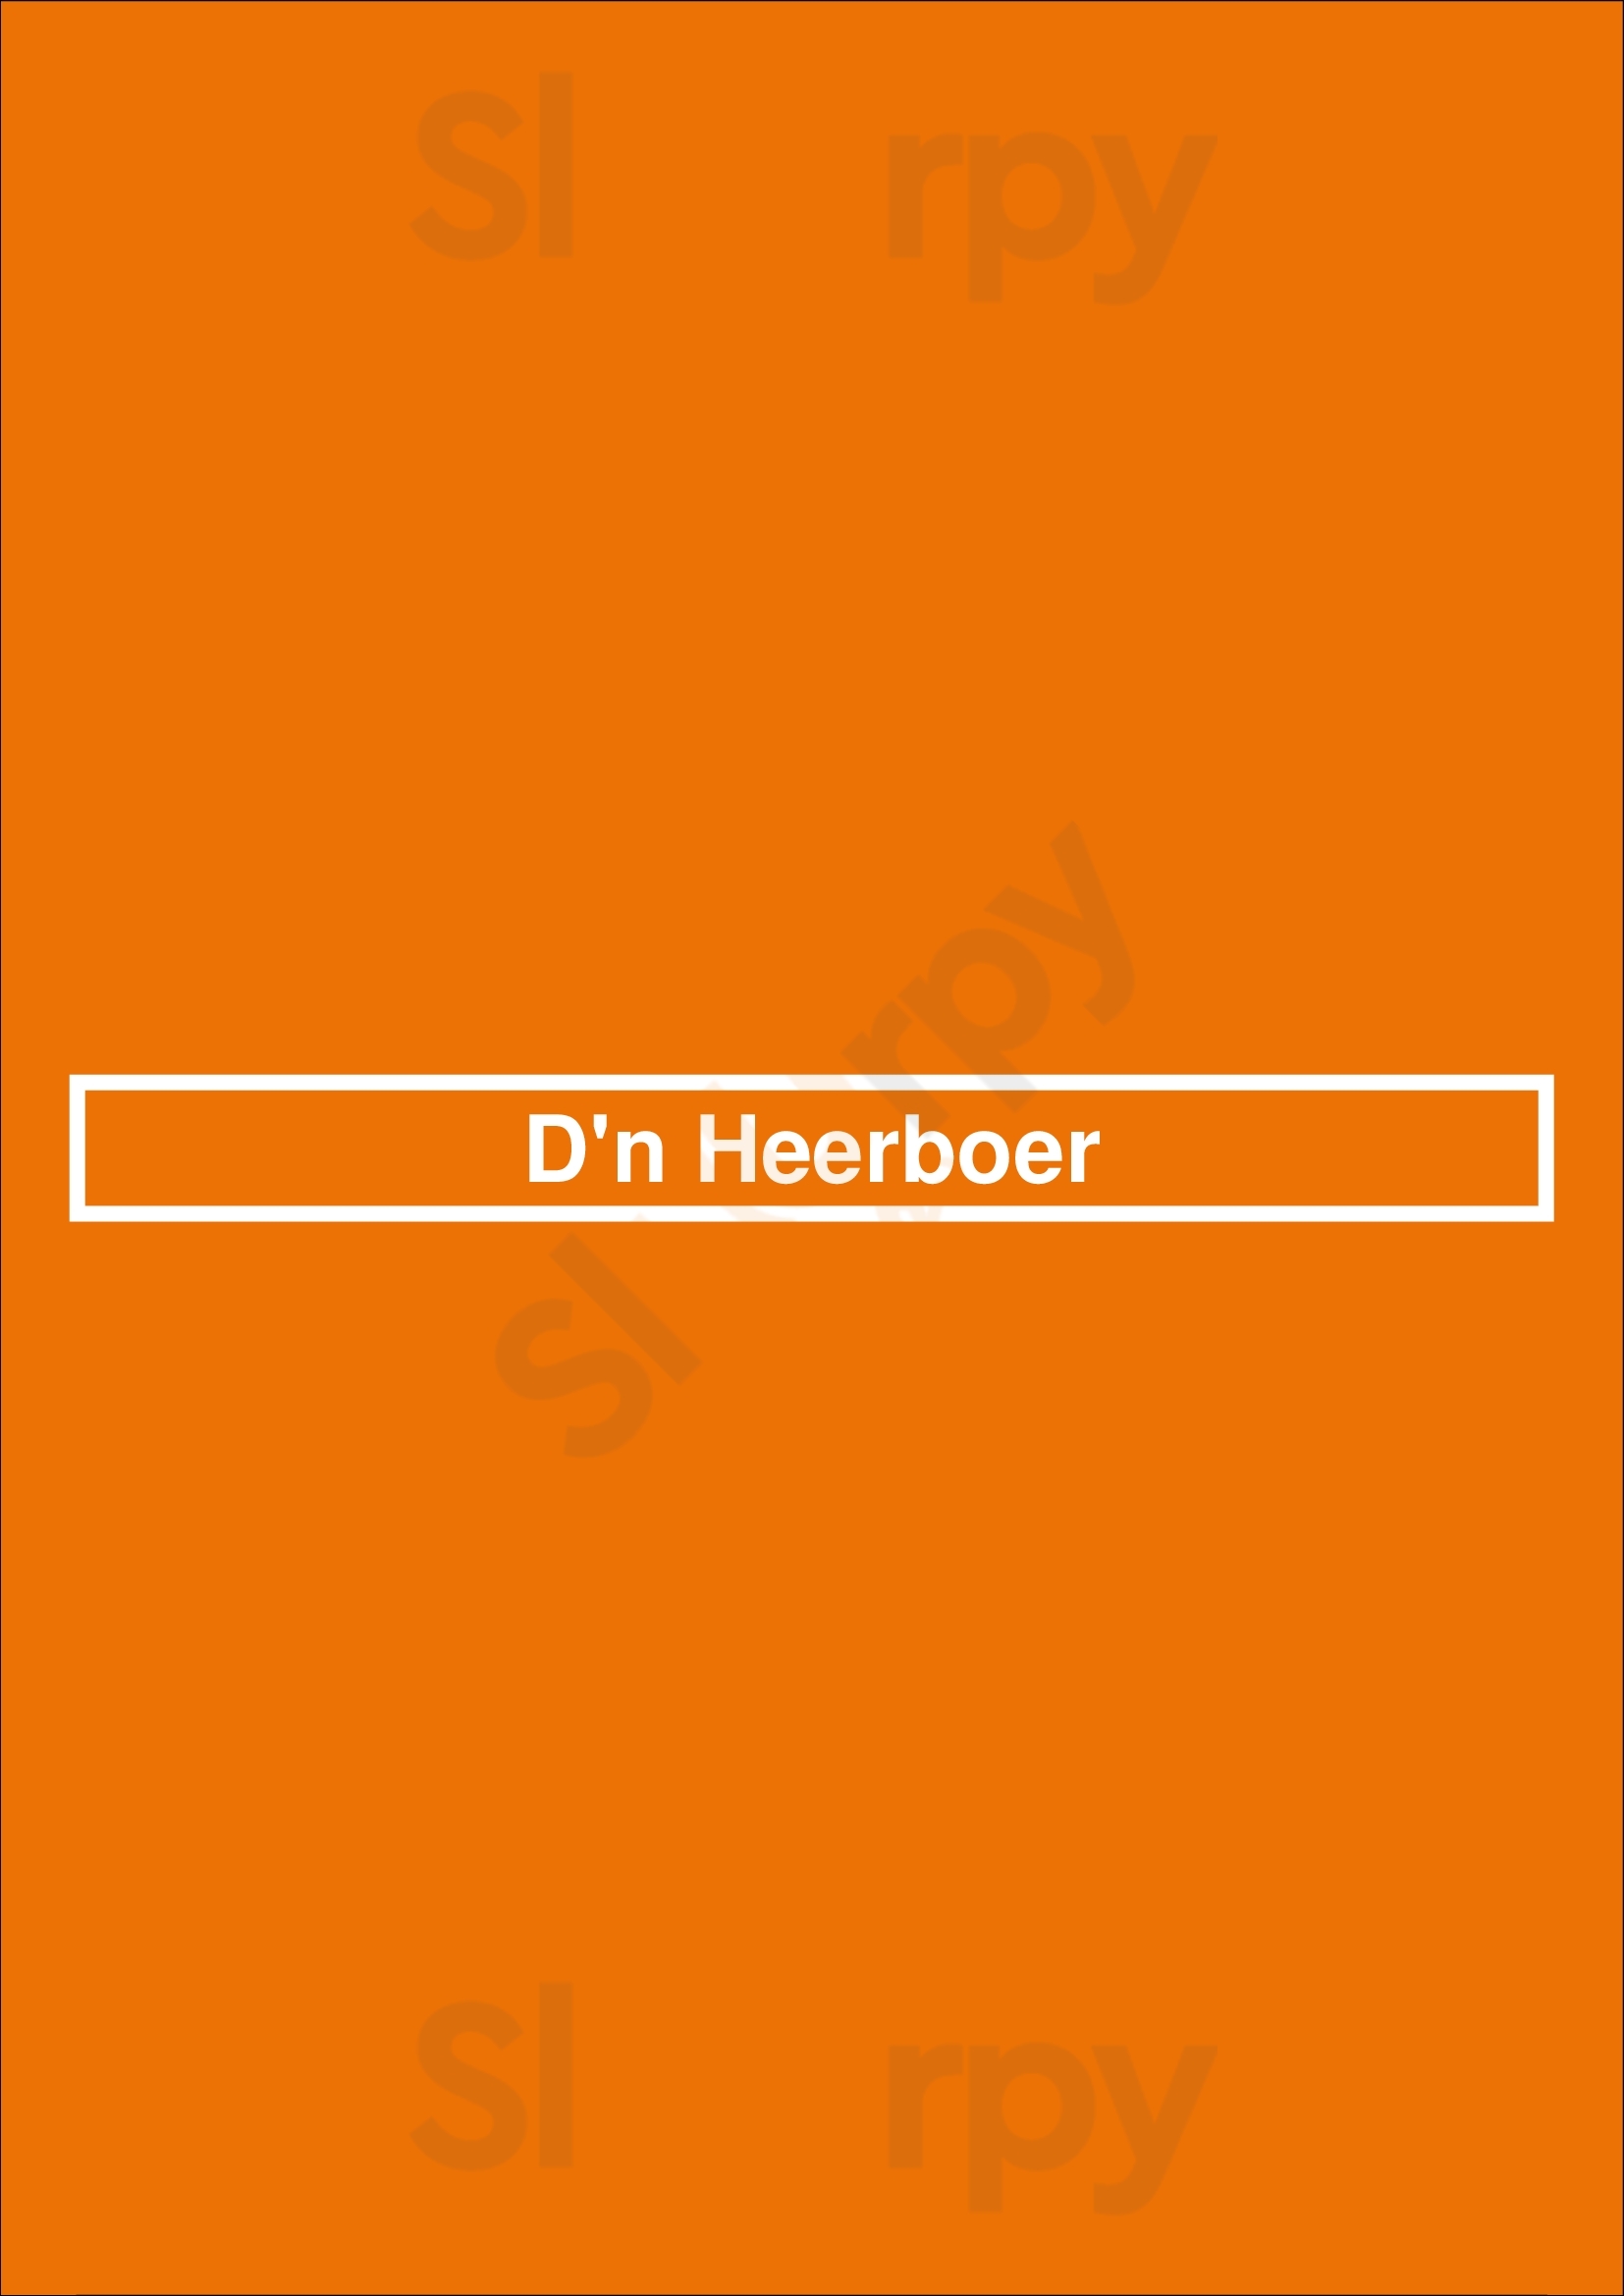 D'n Heerboer Uden Menu - 1